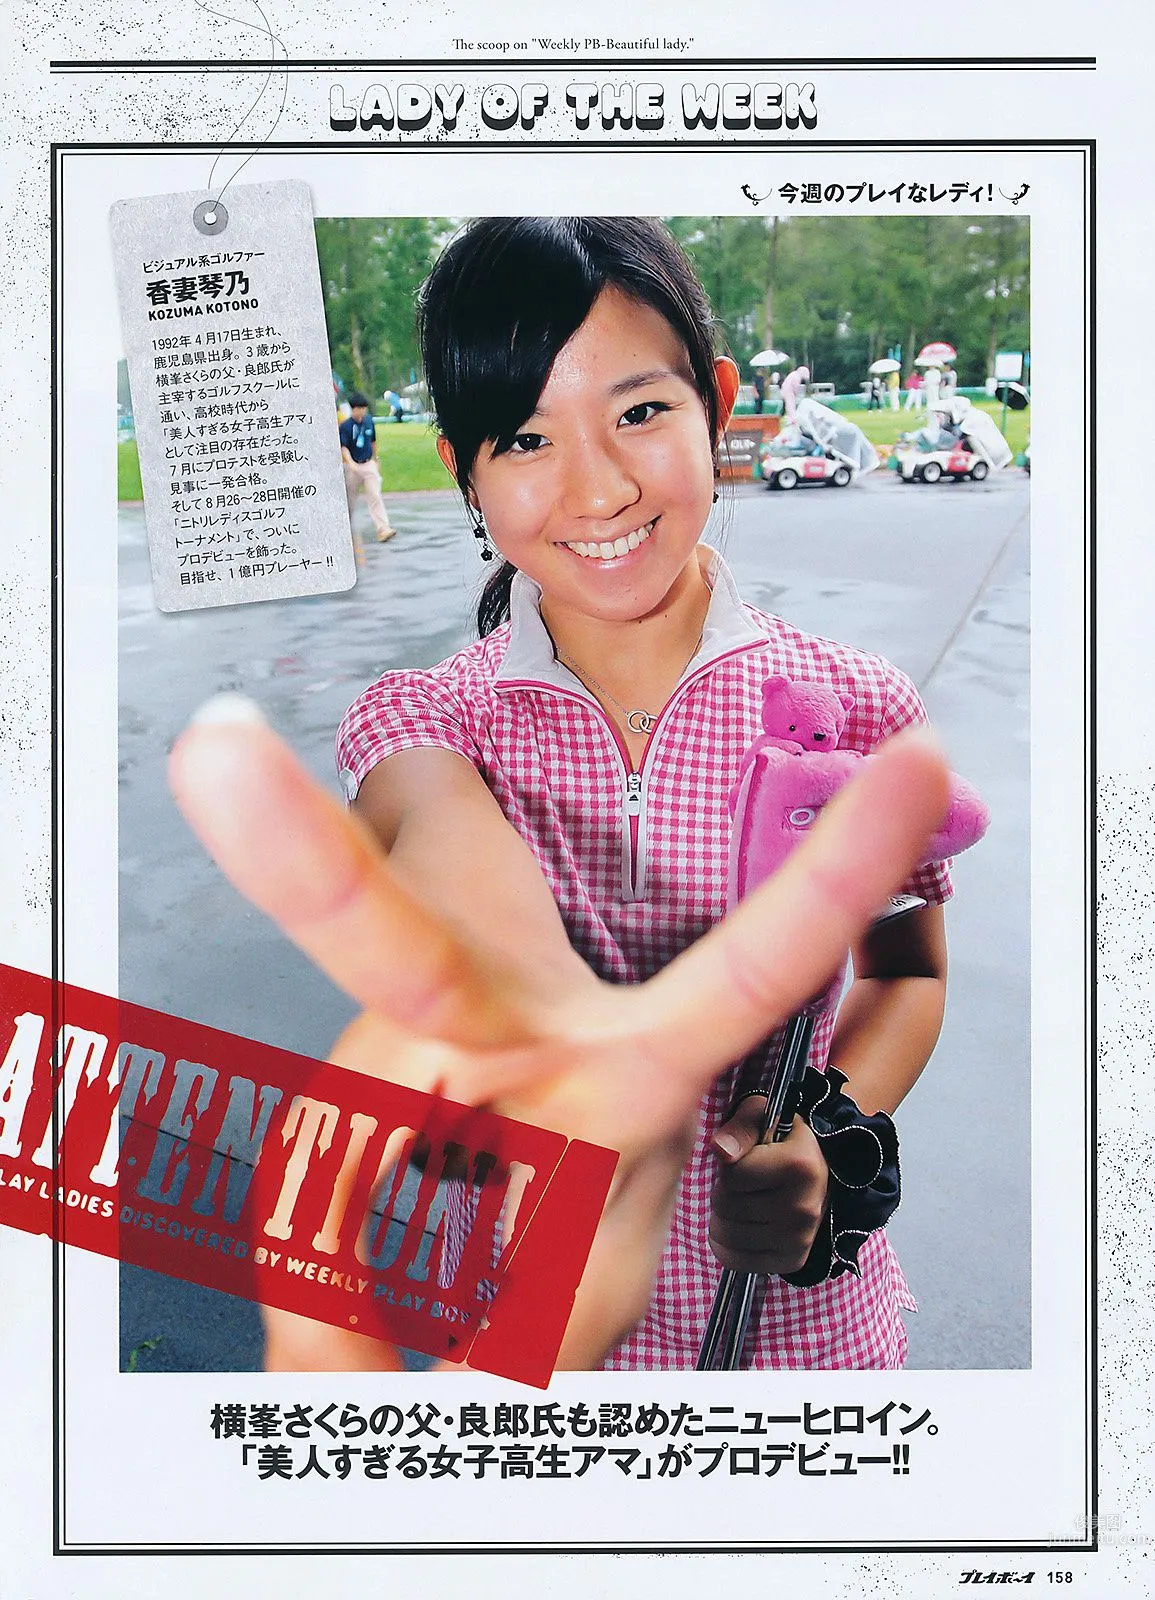 桐谷美玲 仁藤みさき 高桥爱 青木爱 AKB48 池田夏希 [Weekly Playboy] 2011年No.38 写真杂志37